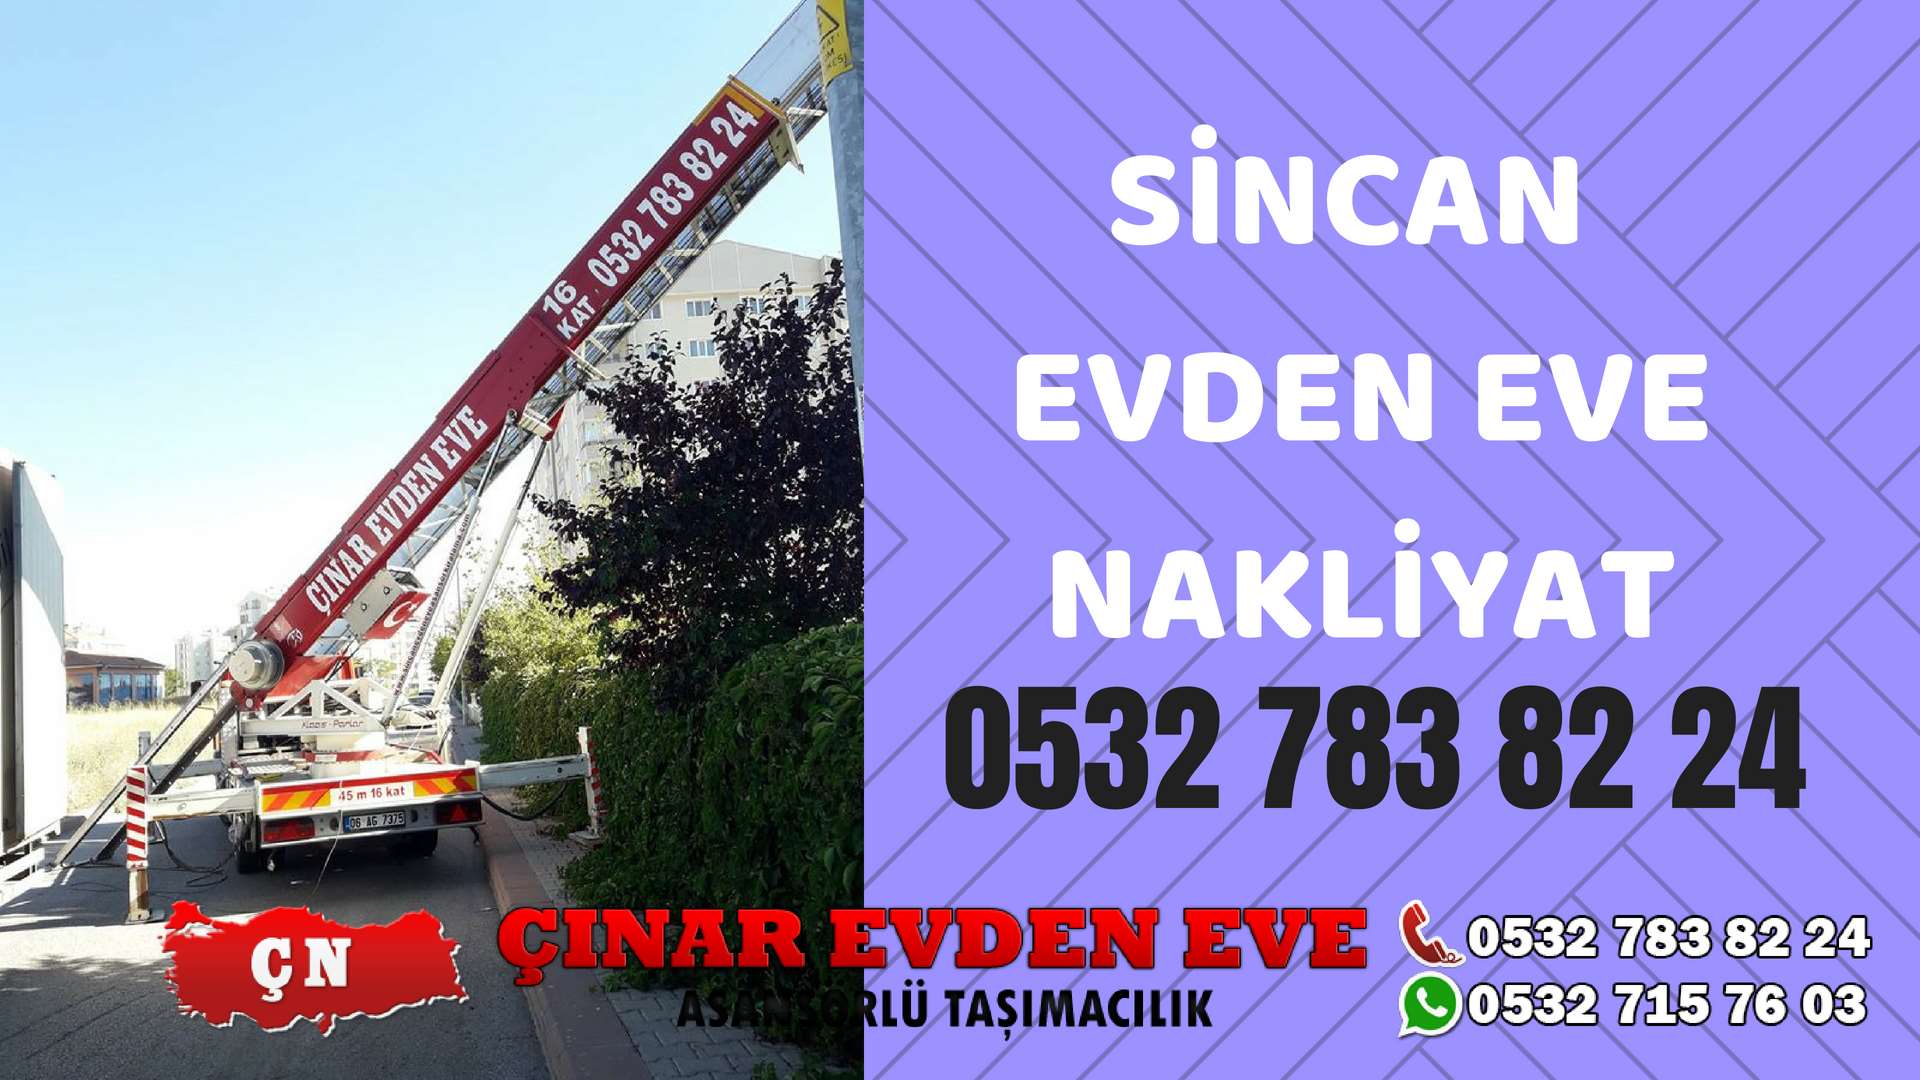 Ankara Polatlı Sincan Evden Eve Nakliyat, Asansörlü Taşıma Çınar Nakliyat Sincan 0532 715 76 03